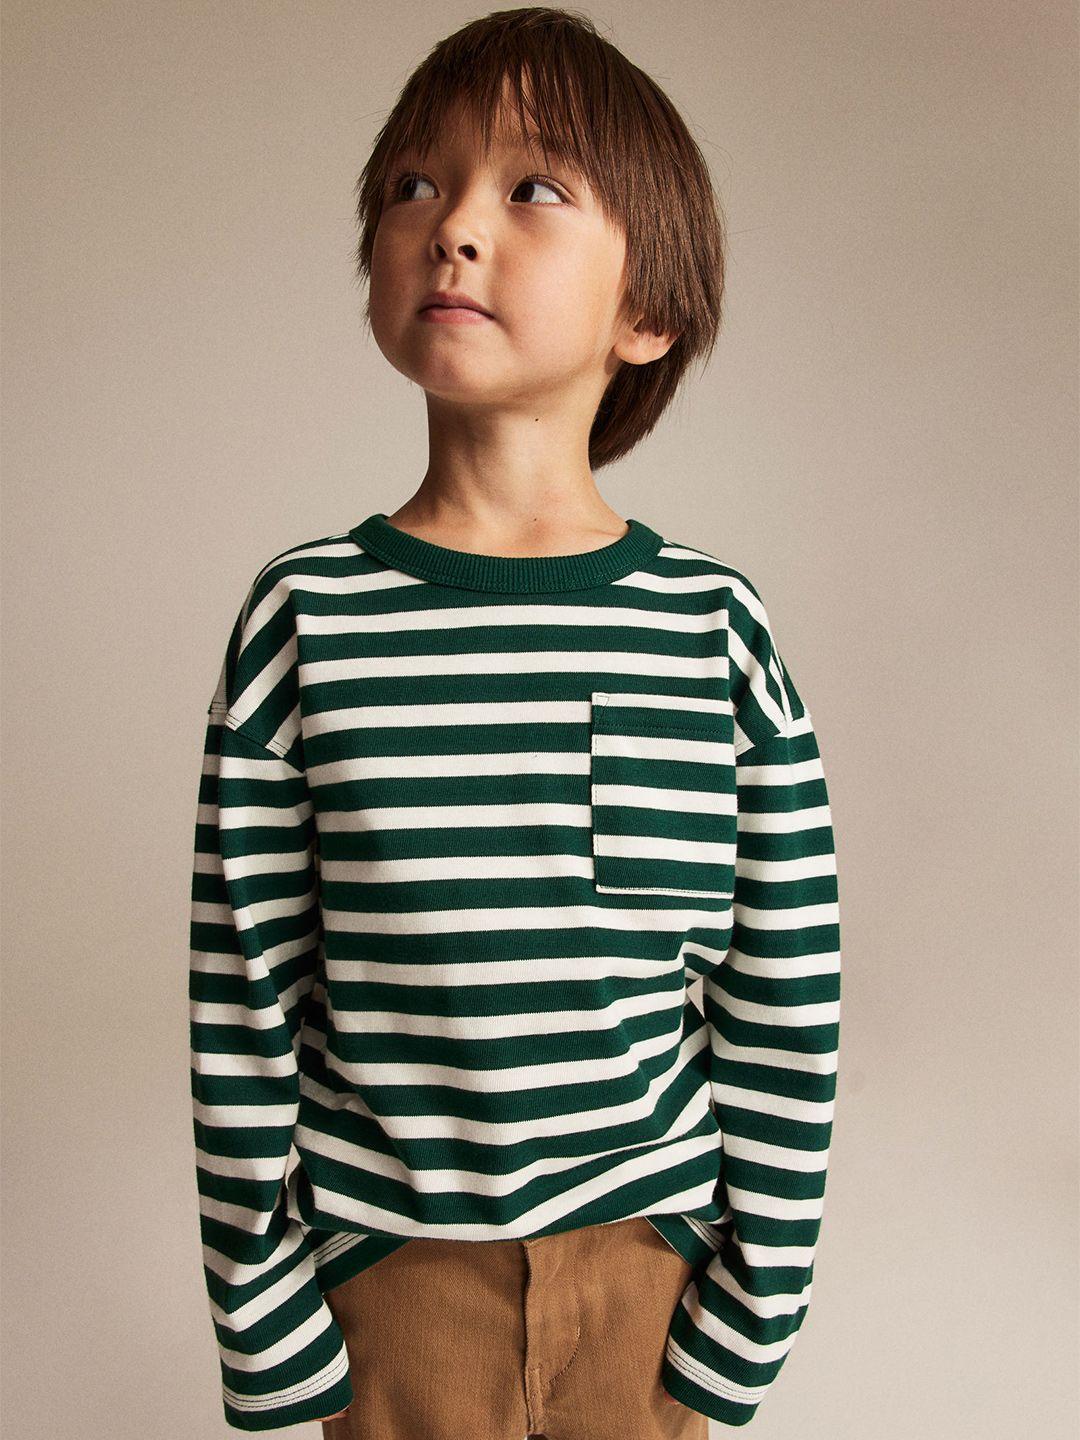 h&m boys striped long-sleeved t-shirt